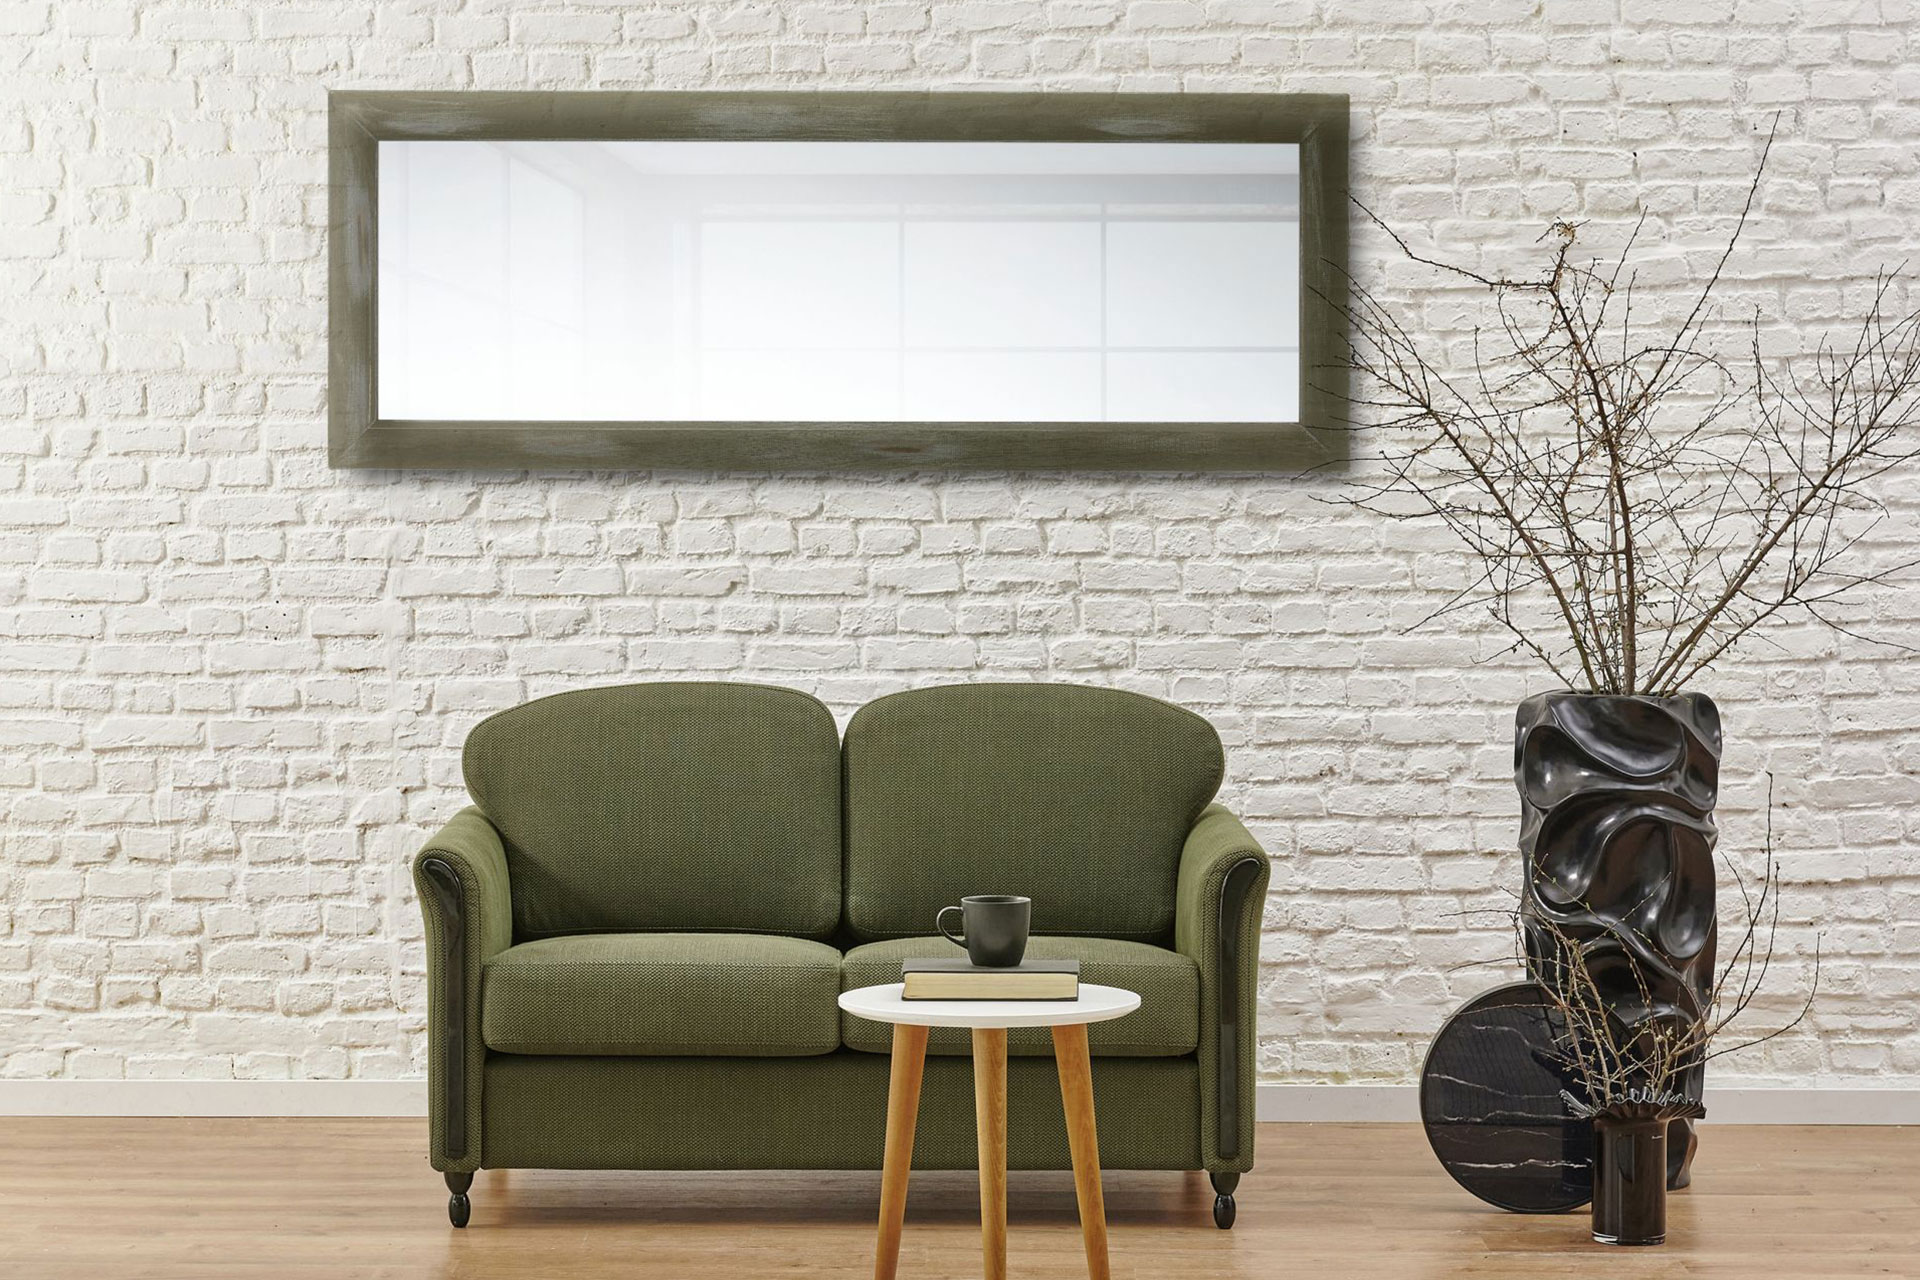 Wandspiegel Modell Olive, Shabby-Chic, olivgrün, Facettenspiegel, rechteckig, Holz, Innenbereich, modern, ASR-Rahmendesign. An der Wand